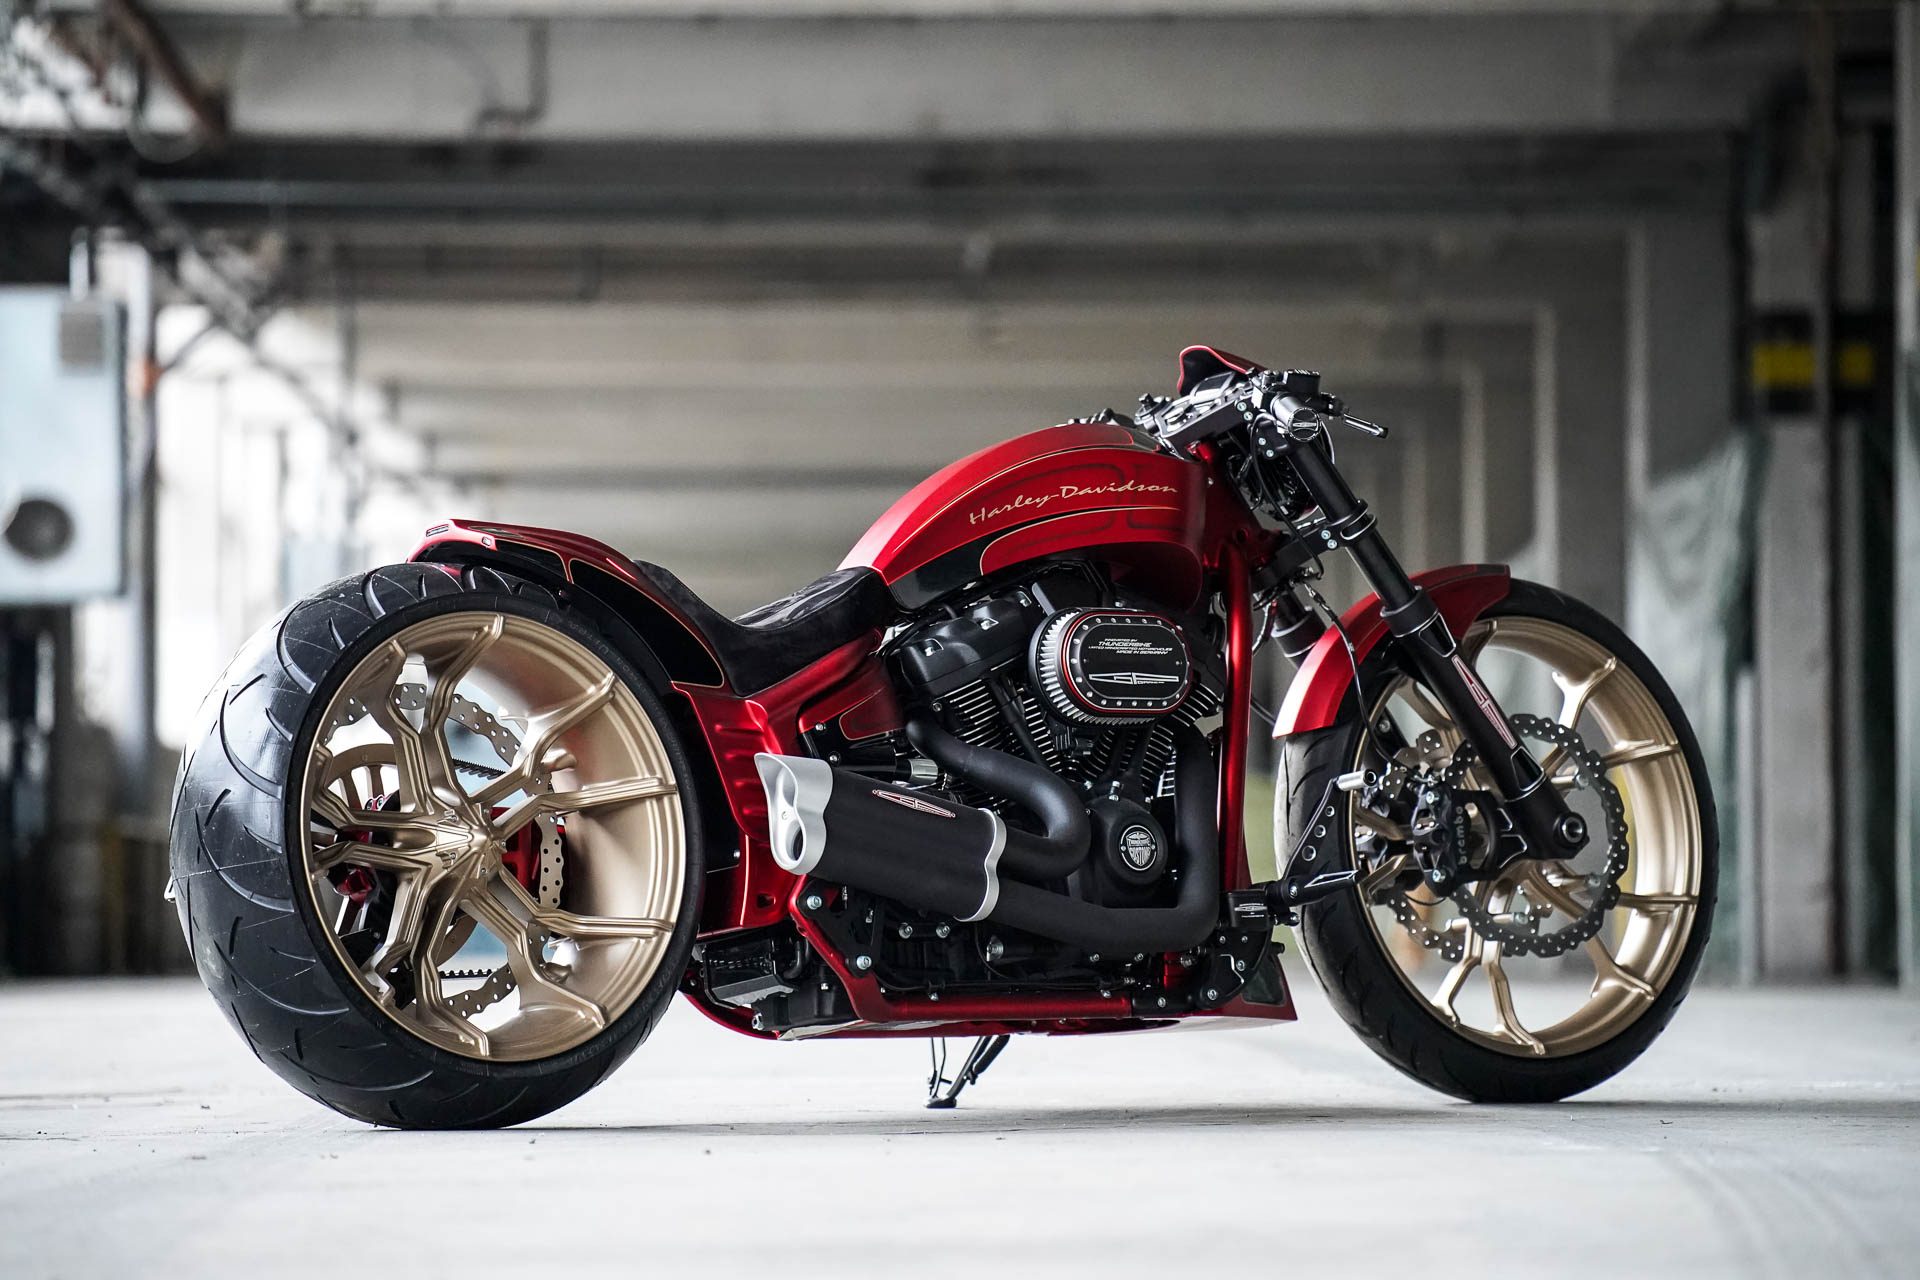 Free download Custom Motorcycle Harley Davidson Thunderbike Wallpaper ...